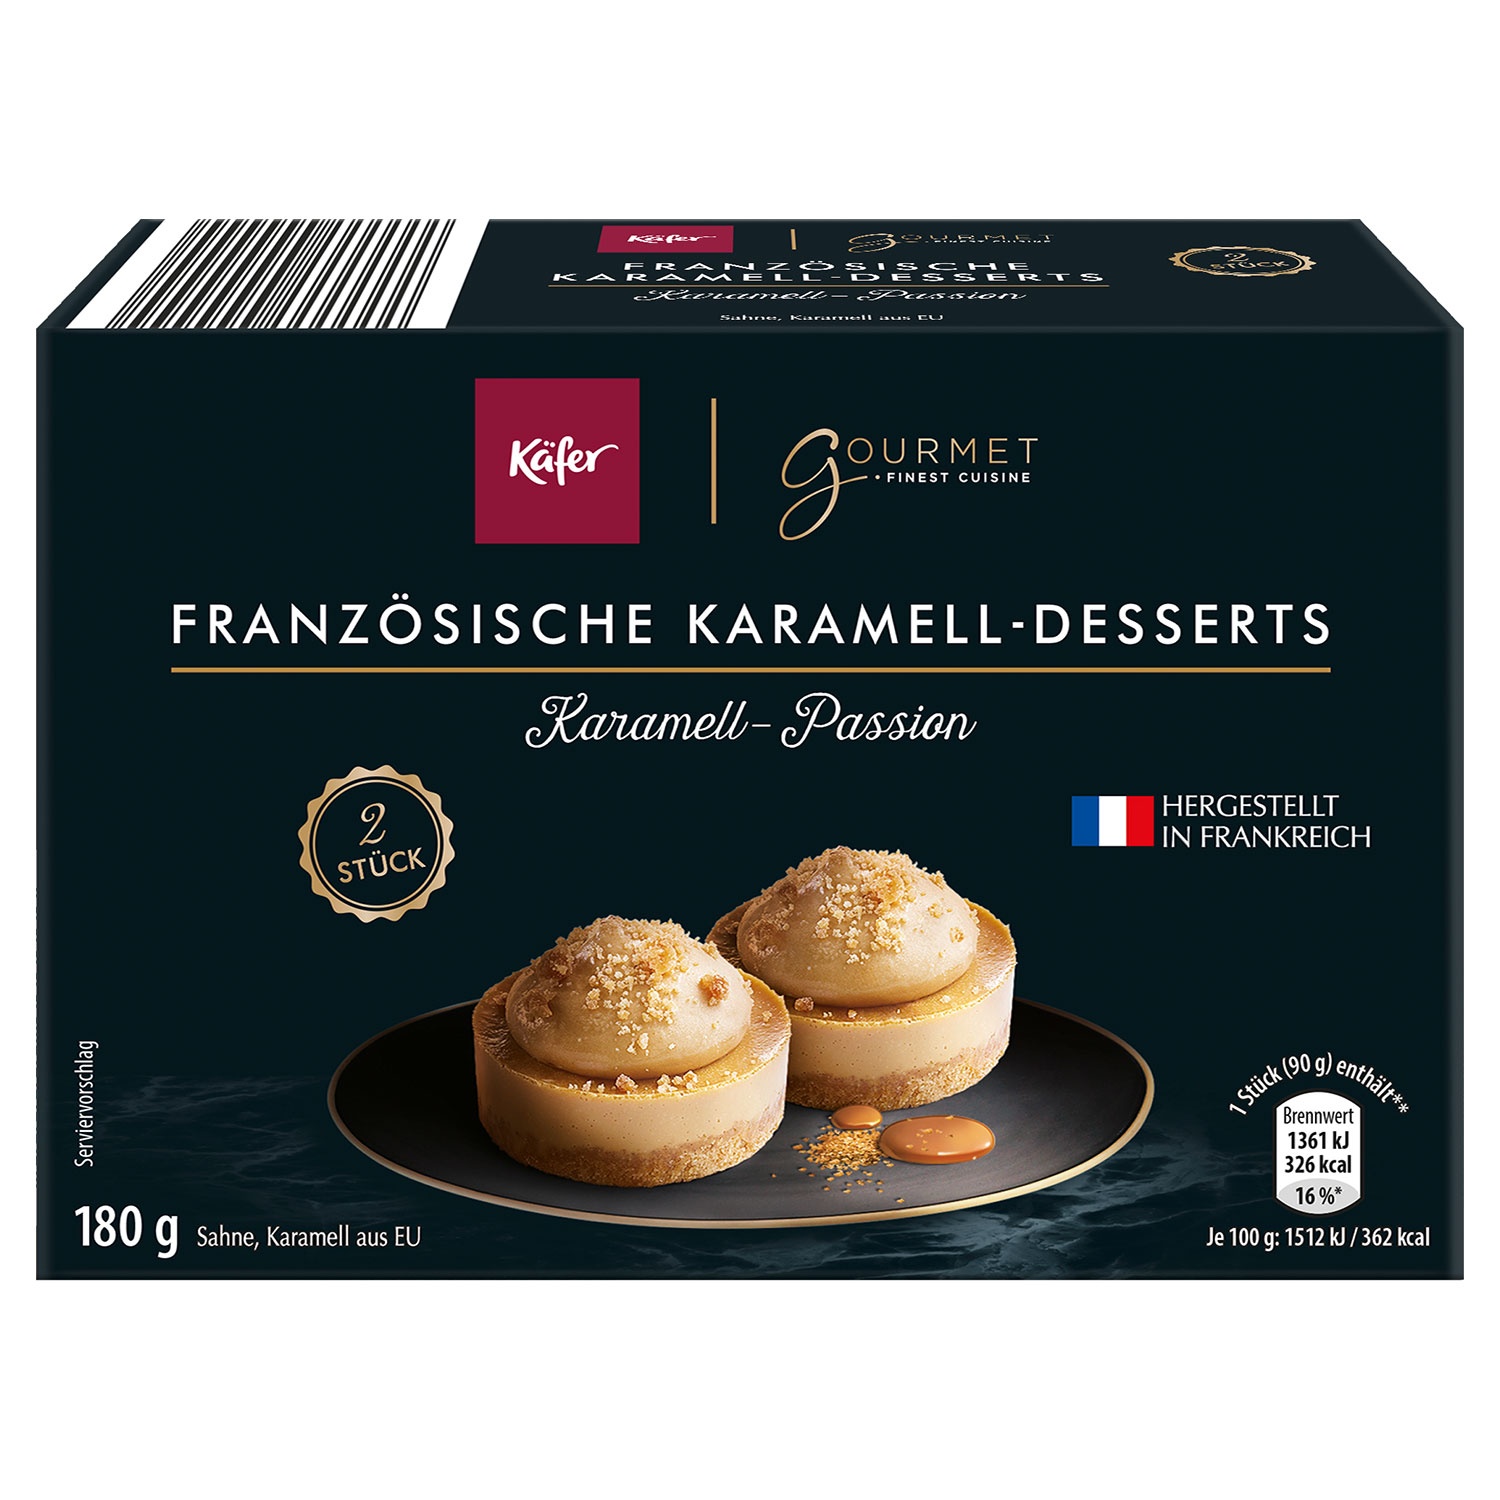 KÄFER X GOURMET FINEST CUISINE Französische Karamell-Desserts 180 g